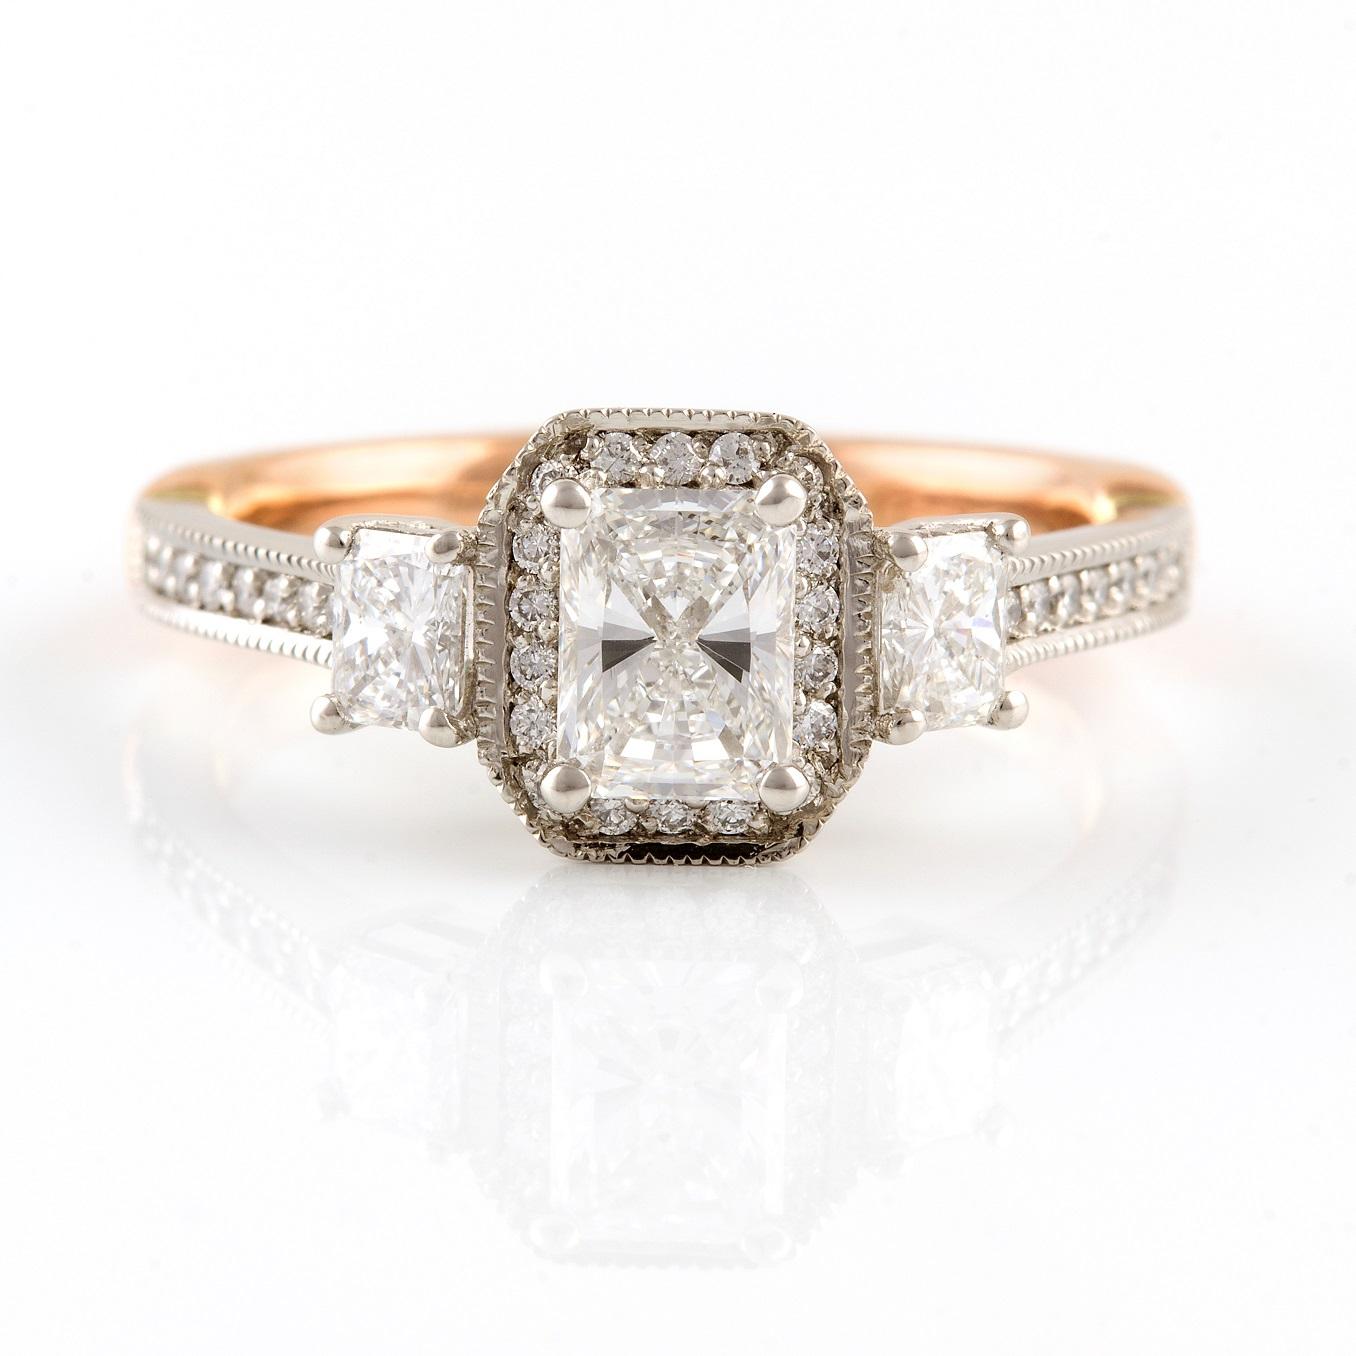 Platino Rosa Diamantener Ring

Dieser elegante Ring im Vintage-Stil wurde verkauft, wir können ihn jedoch auf Bestellung innerhalb von 20 Arbeitstagen neu anfertigen. Dieser Ring besteht aus einem wunderschönen Diamanten im Radiant-Schliff, der in